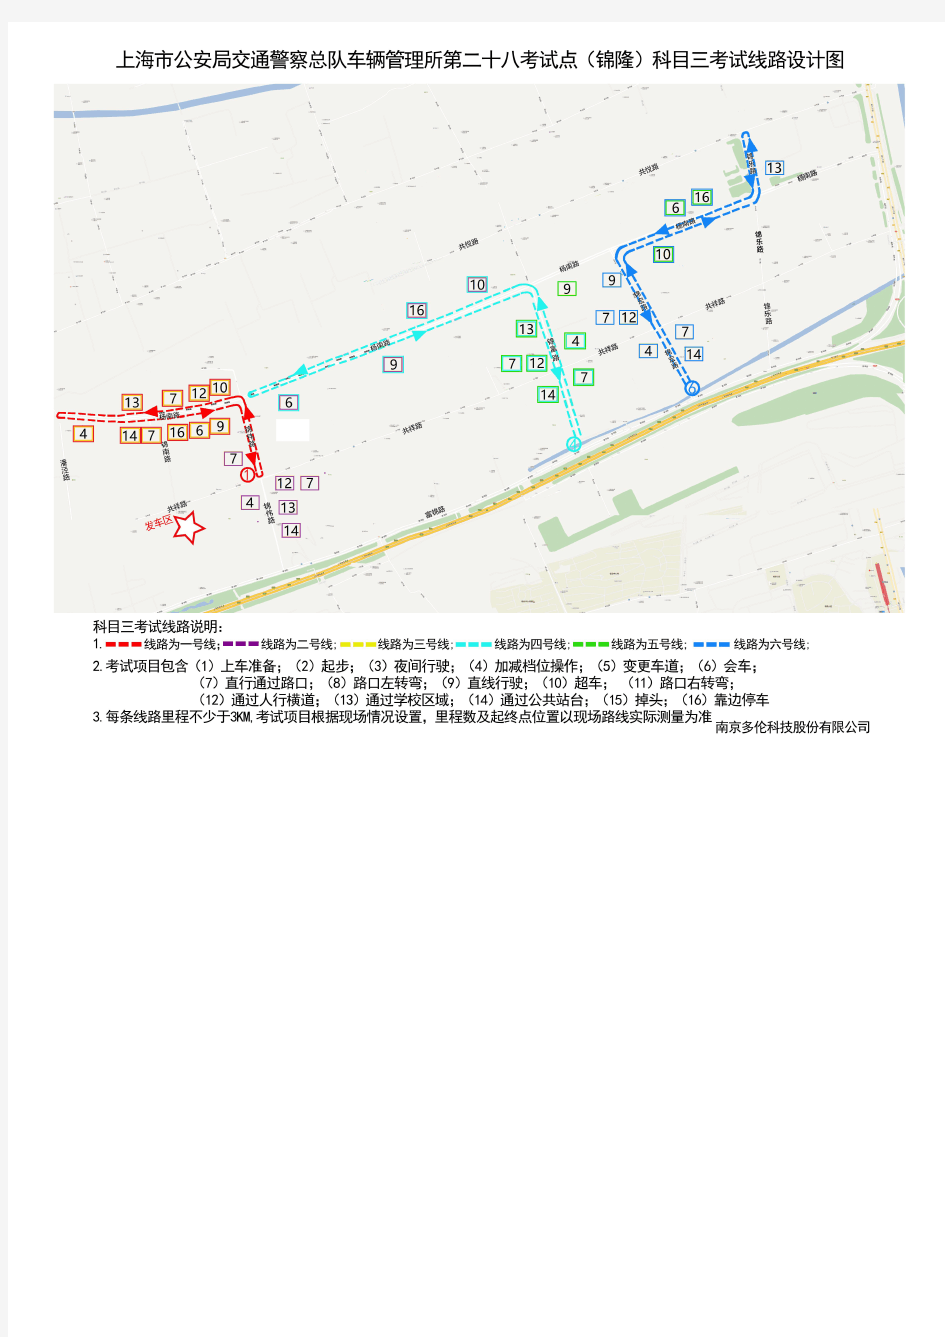 上海锦隆科目三大路考试路线图及攻略最全合集